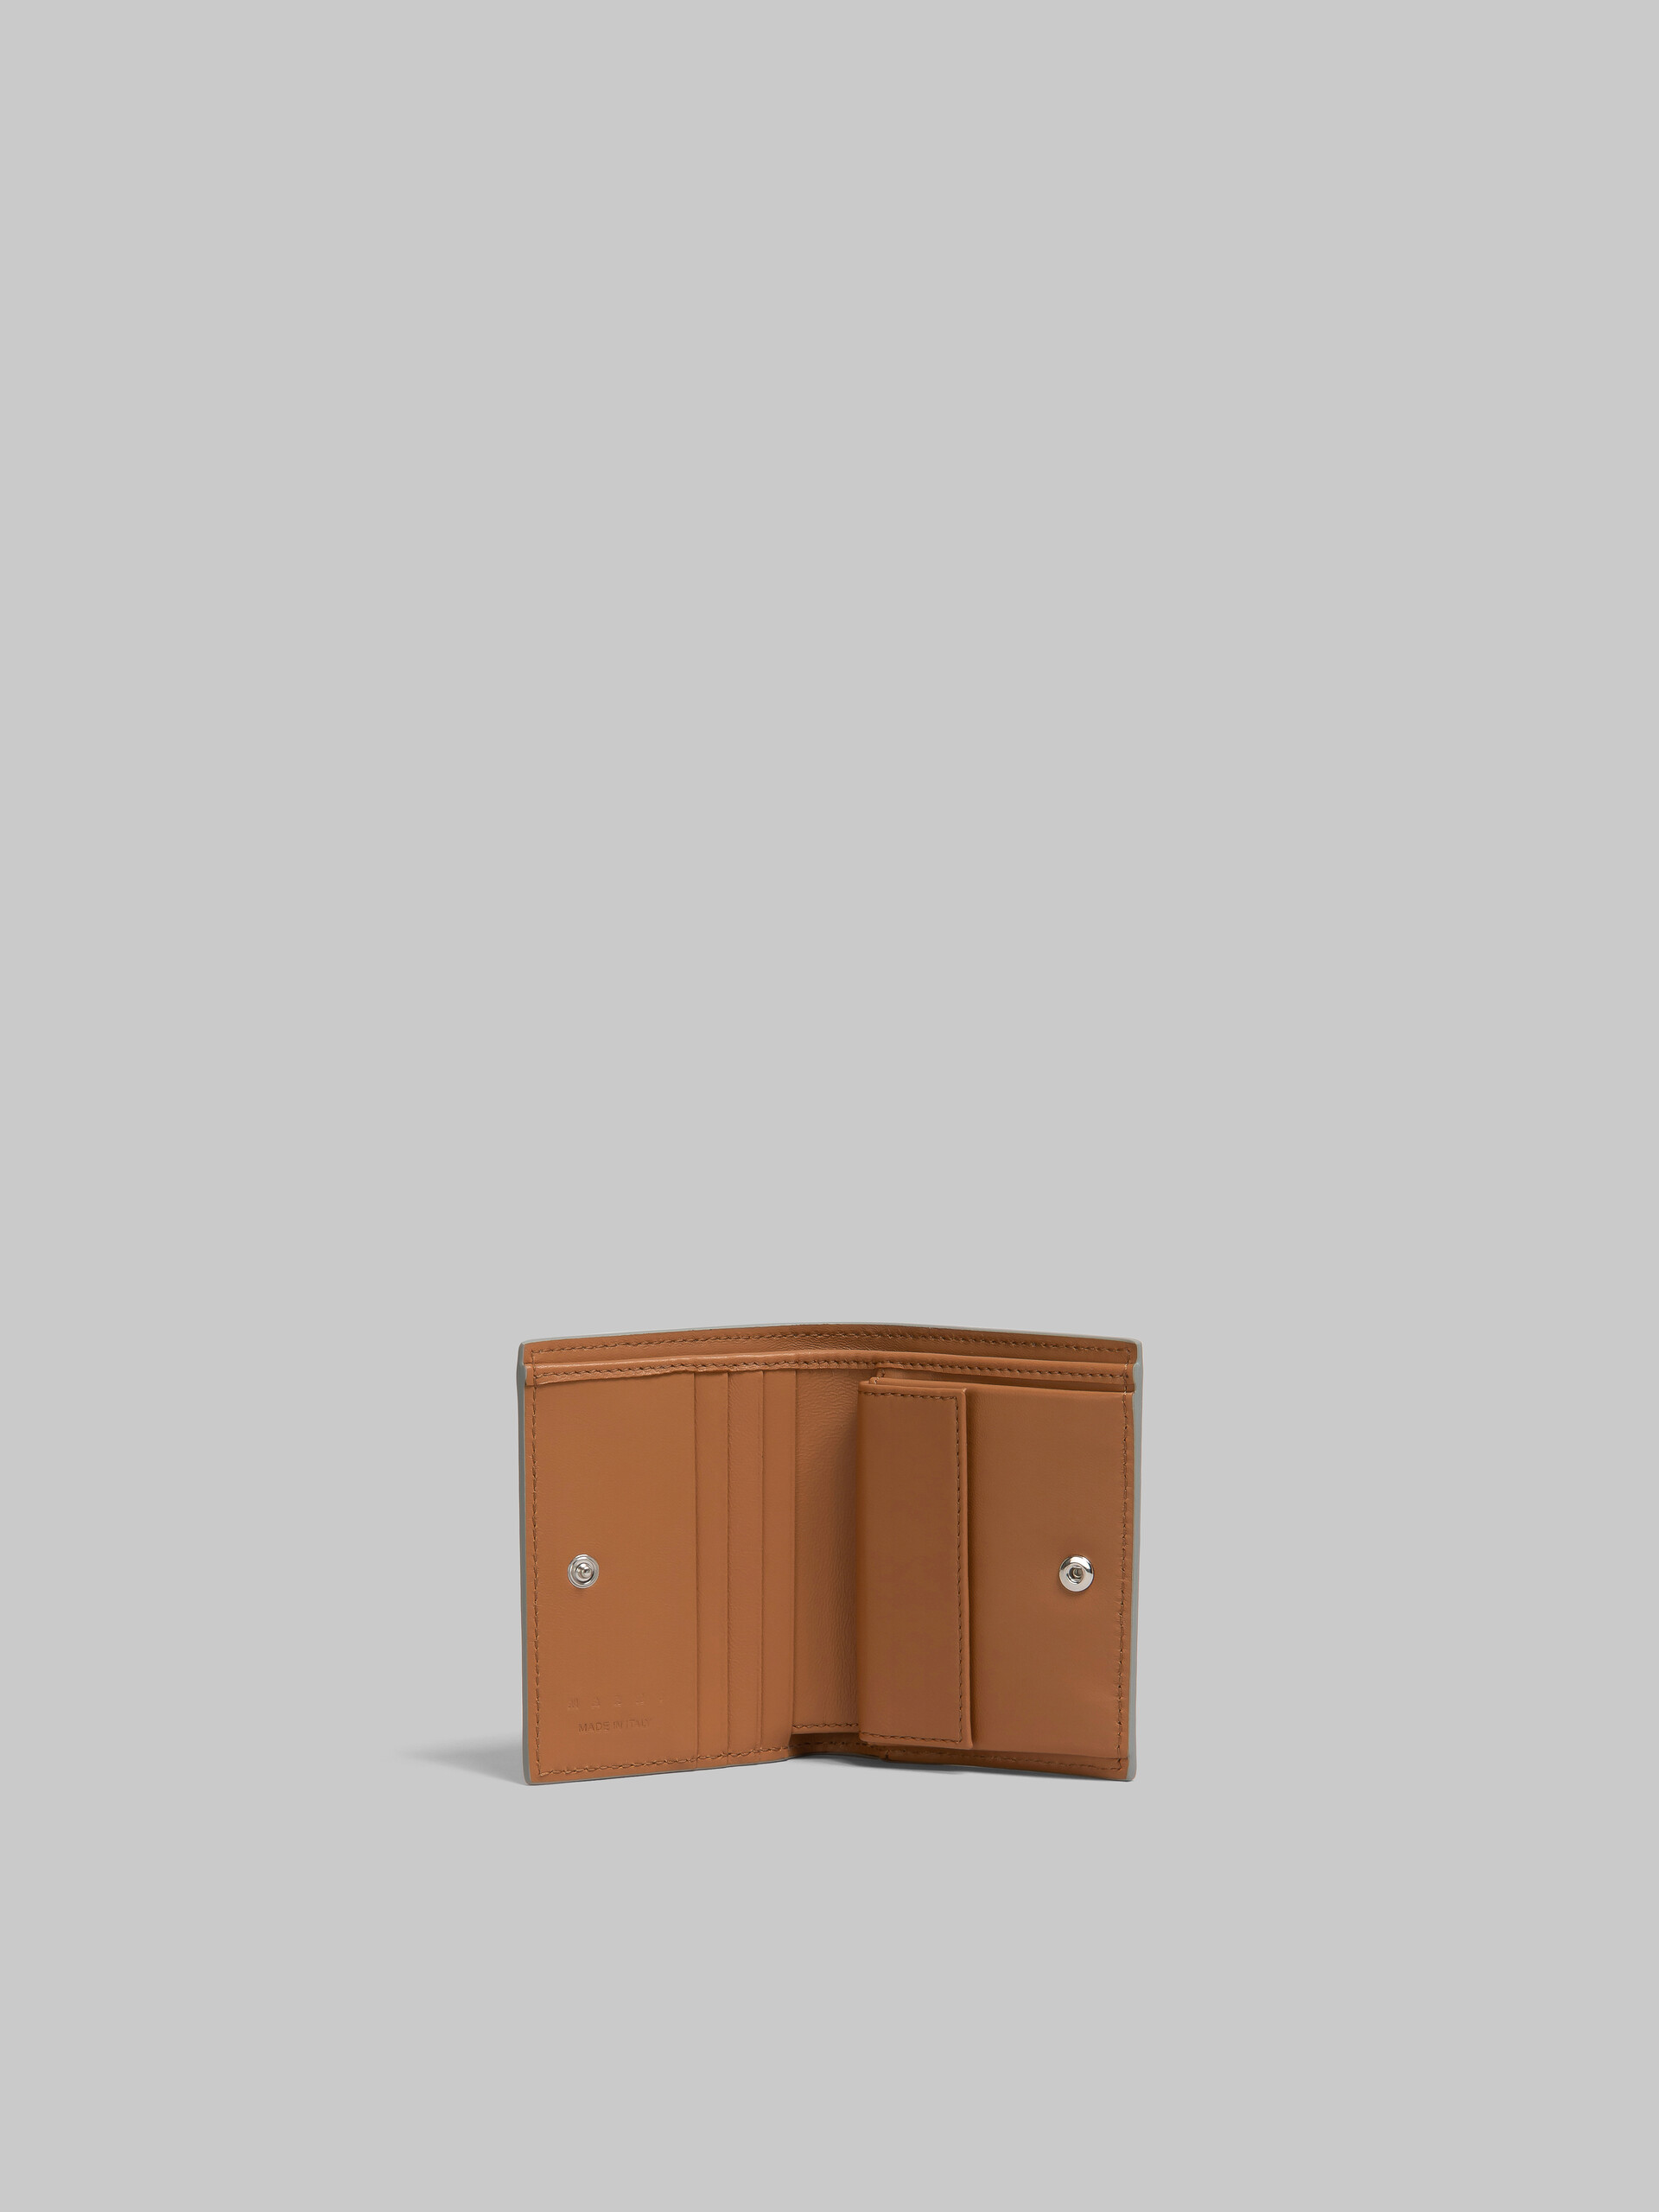 ブラウン レザー メンディング 二つ折りウォレット - 財布 - Image 2